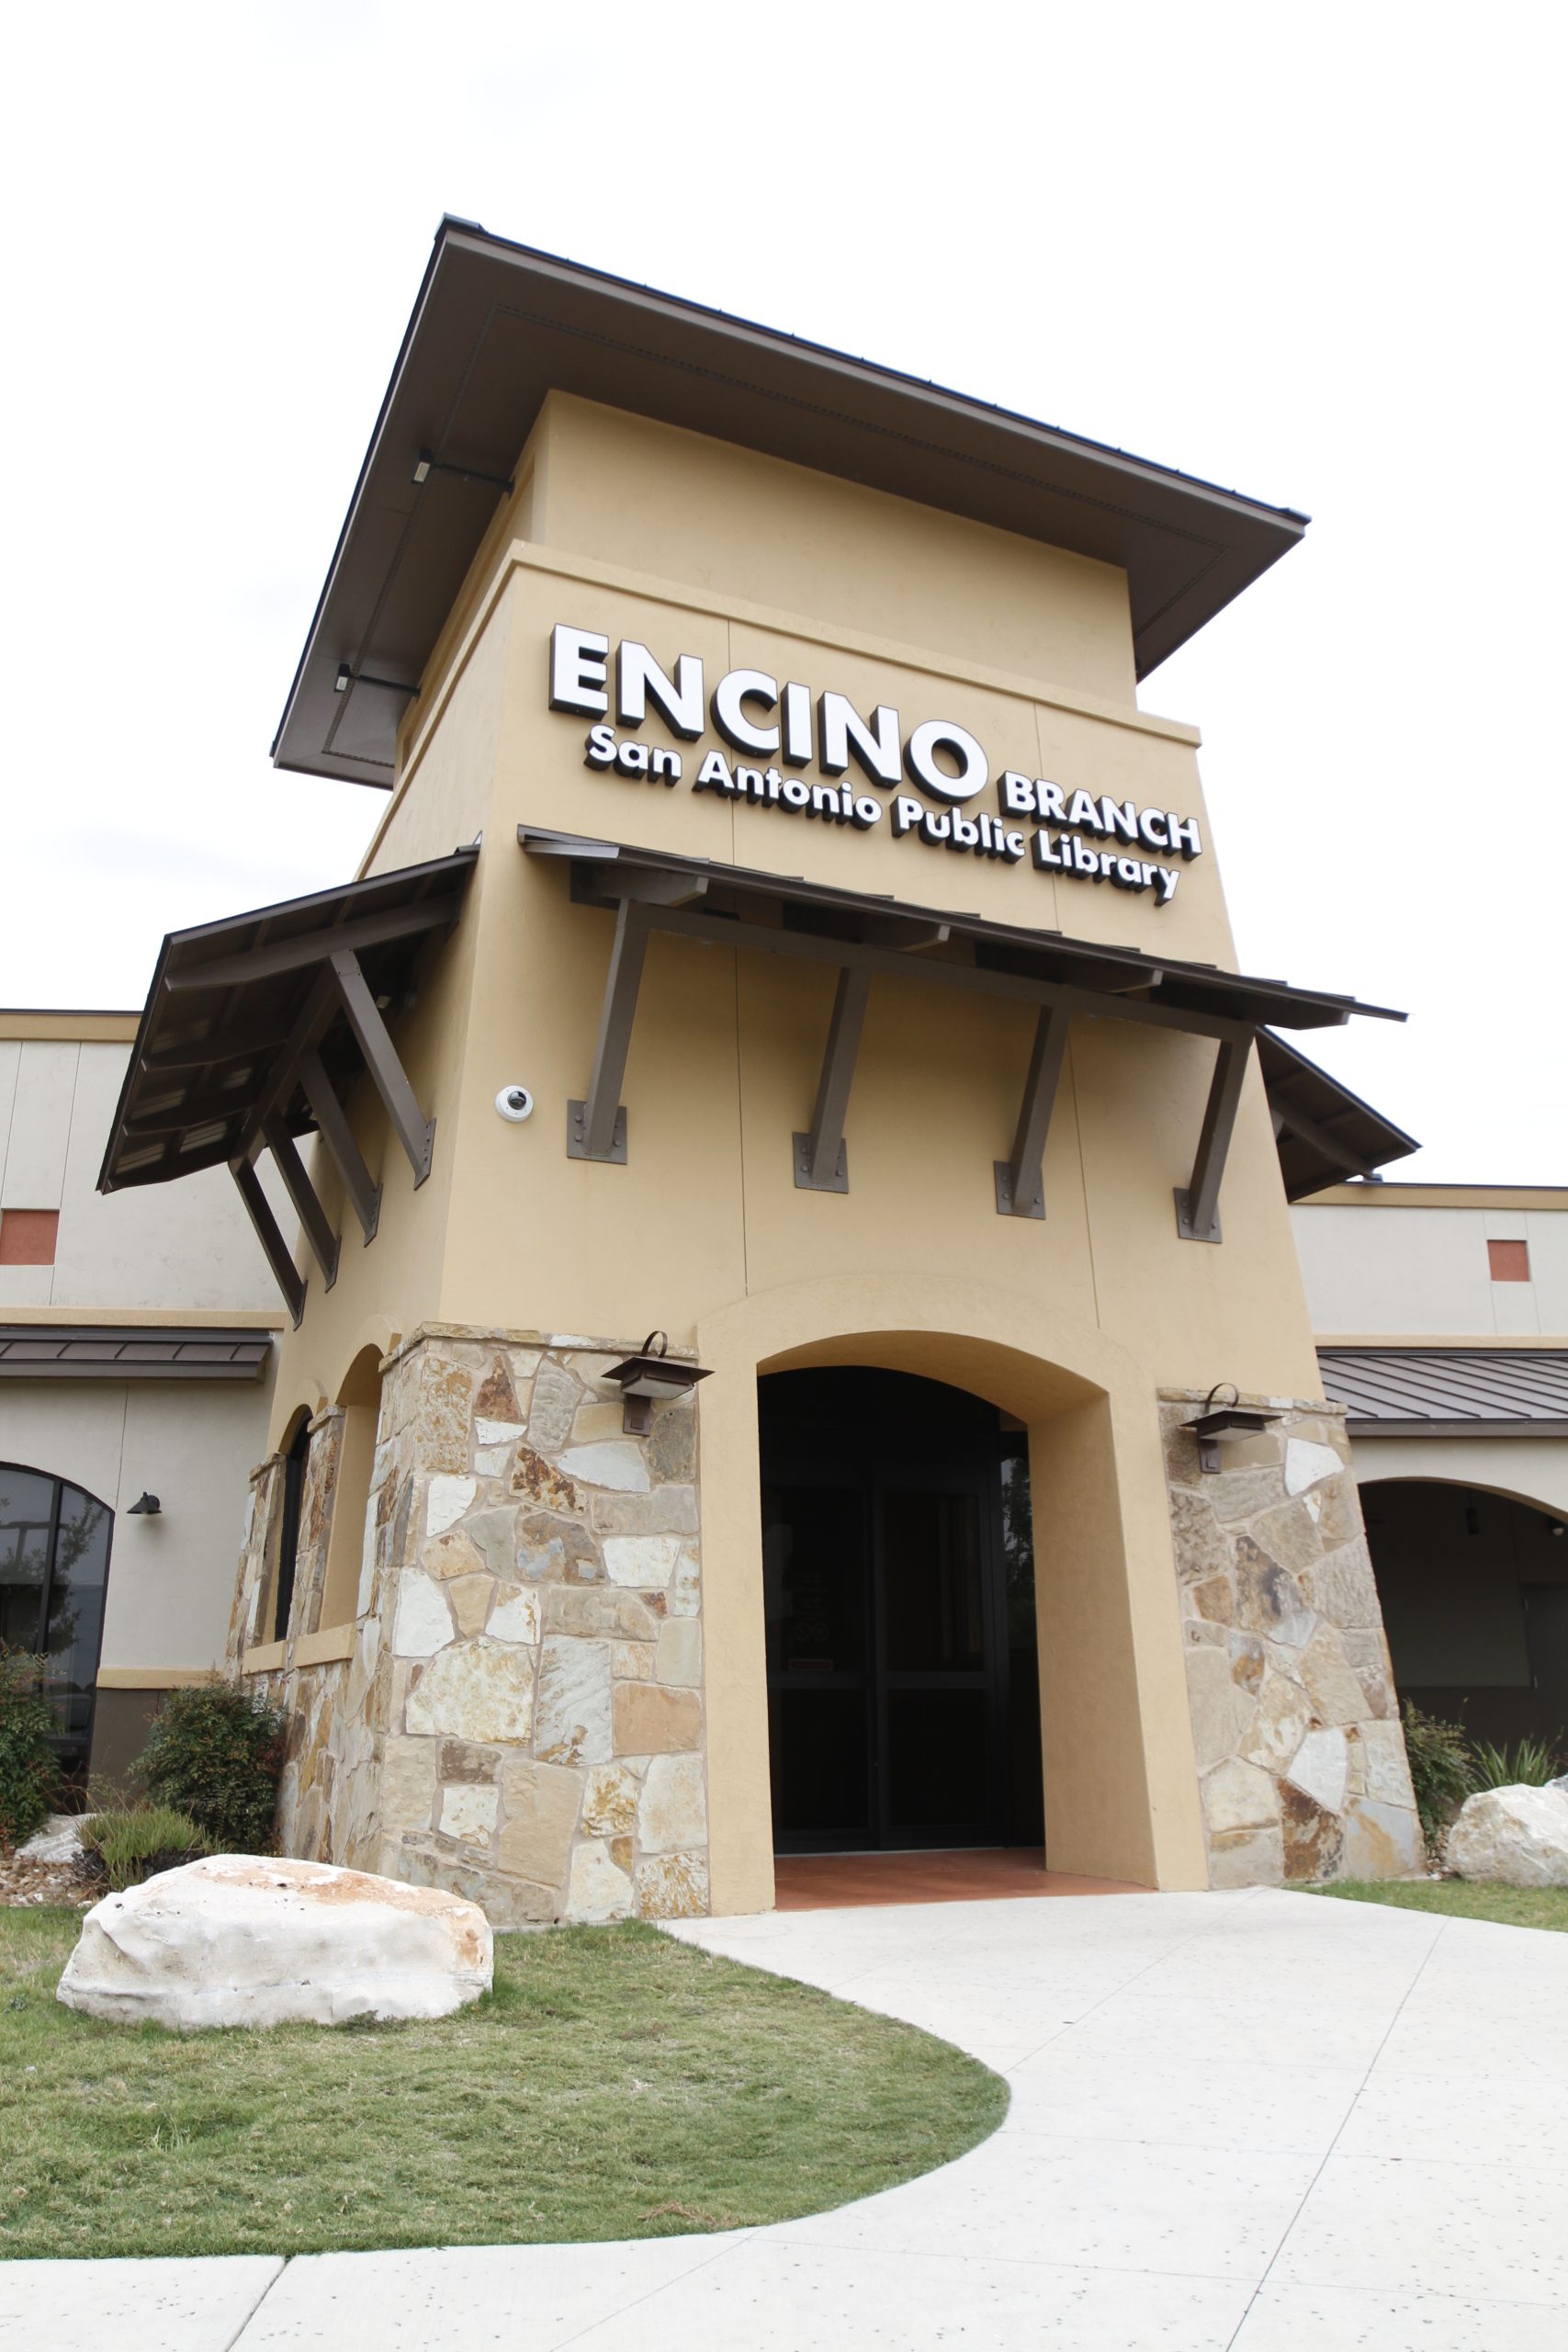 Encino Library building